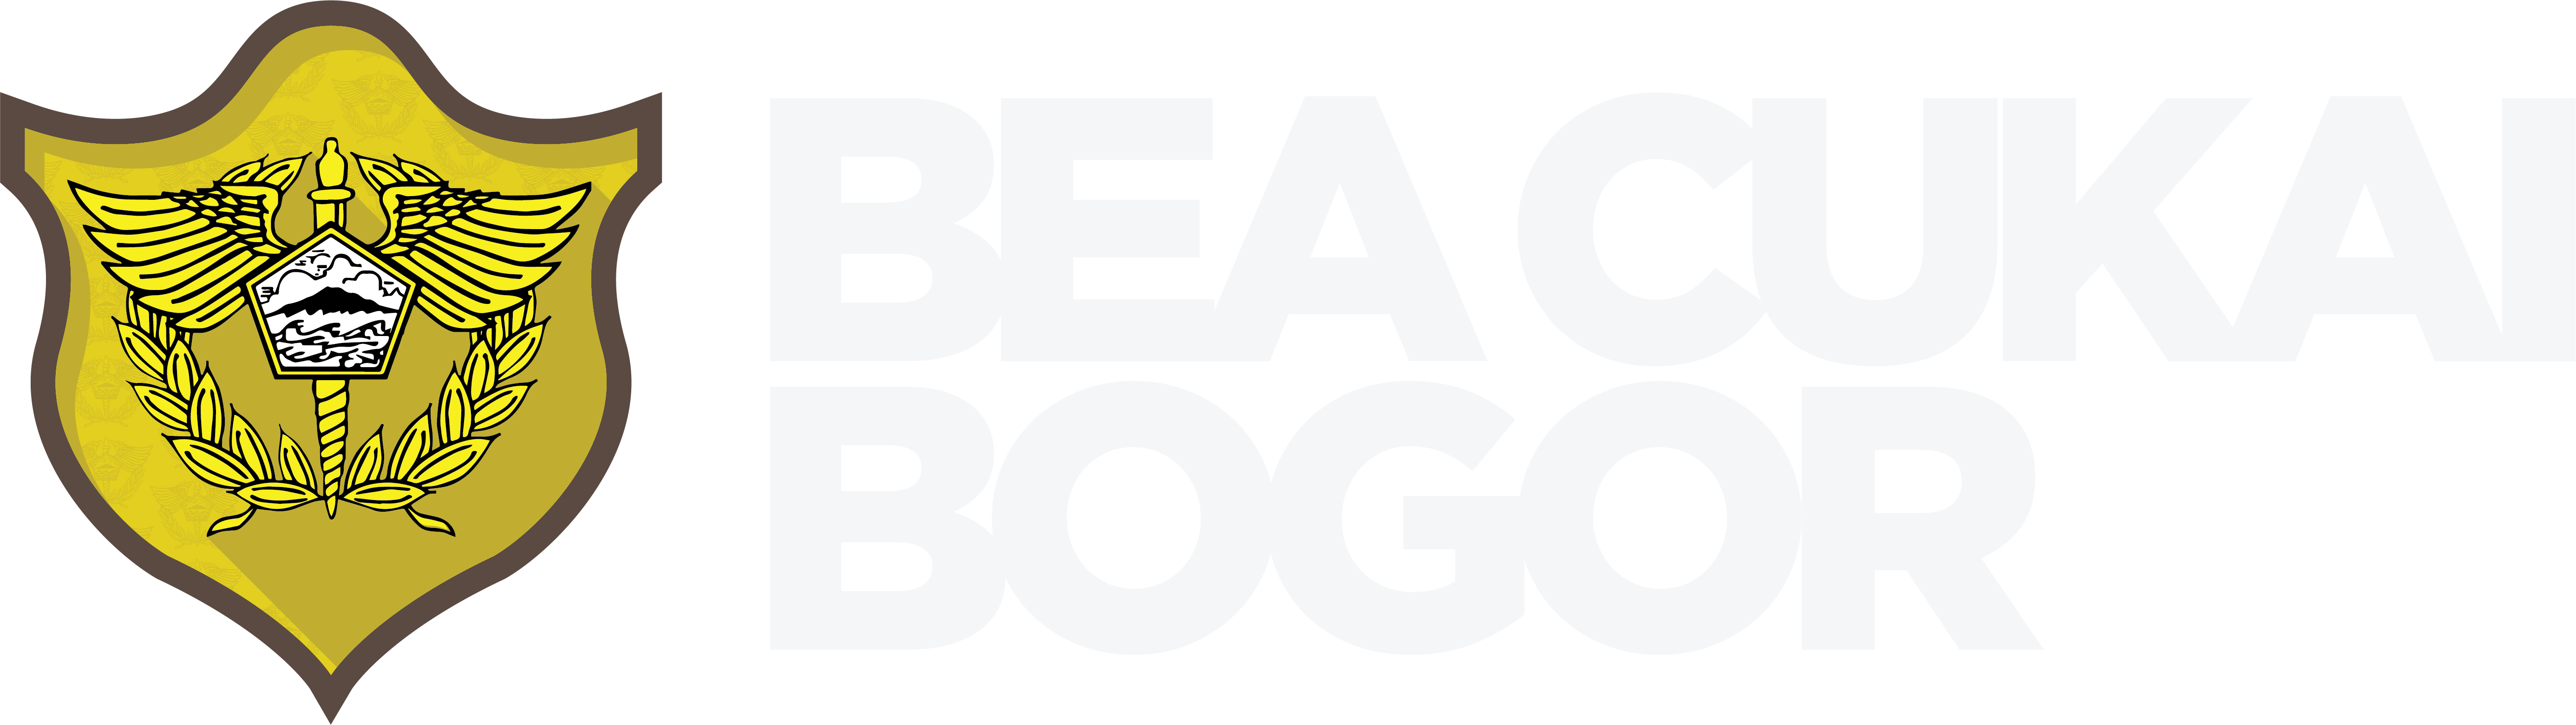 Logo BC text